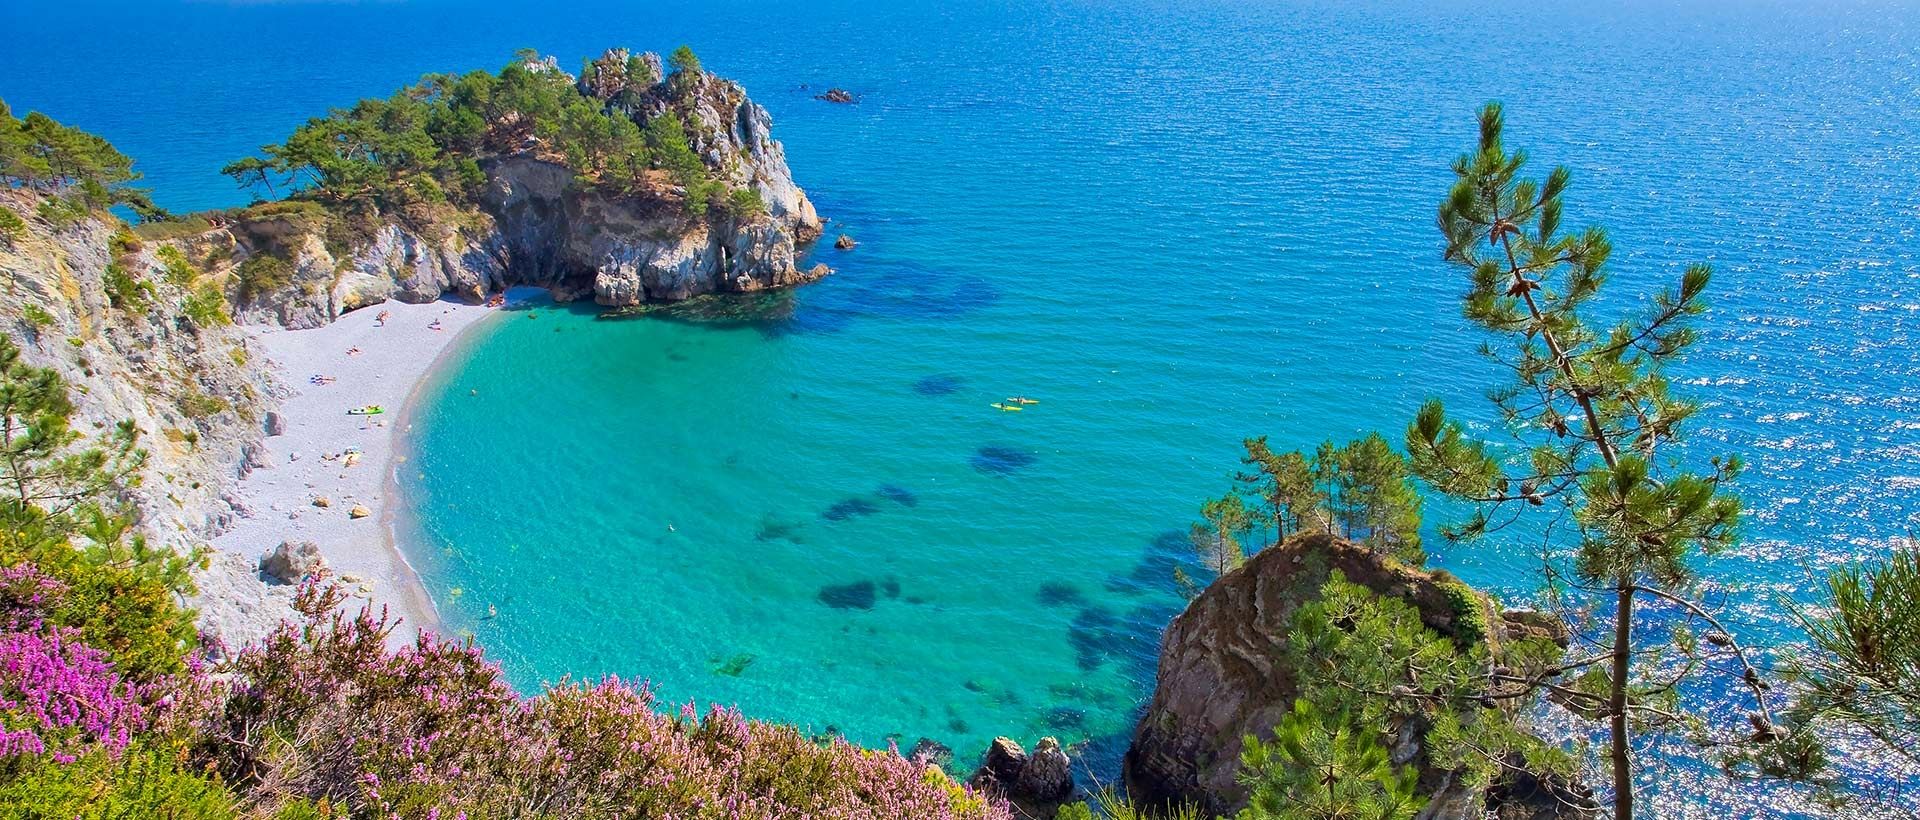 Ontdek de mooiste eilanden van Frankrijk met Sandaya!